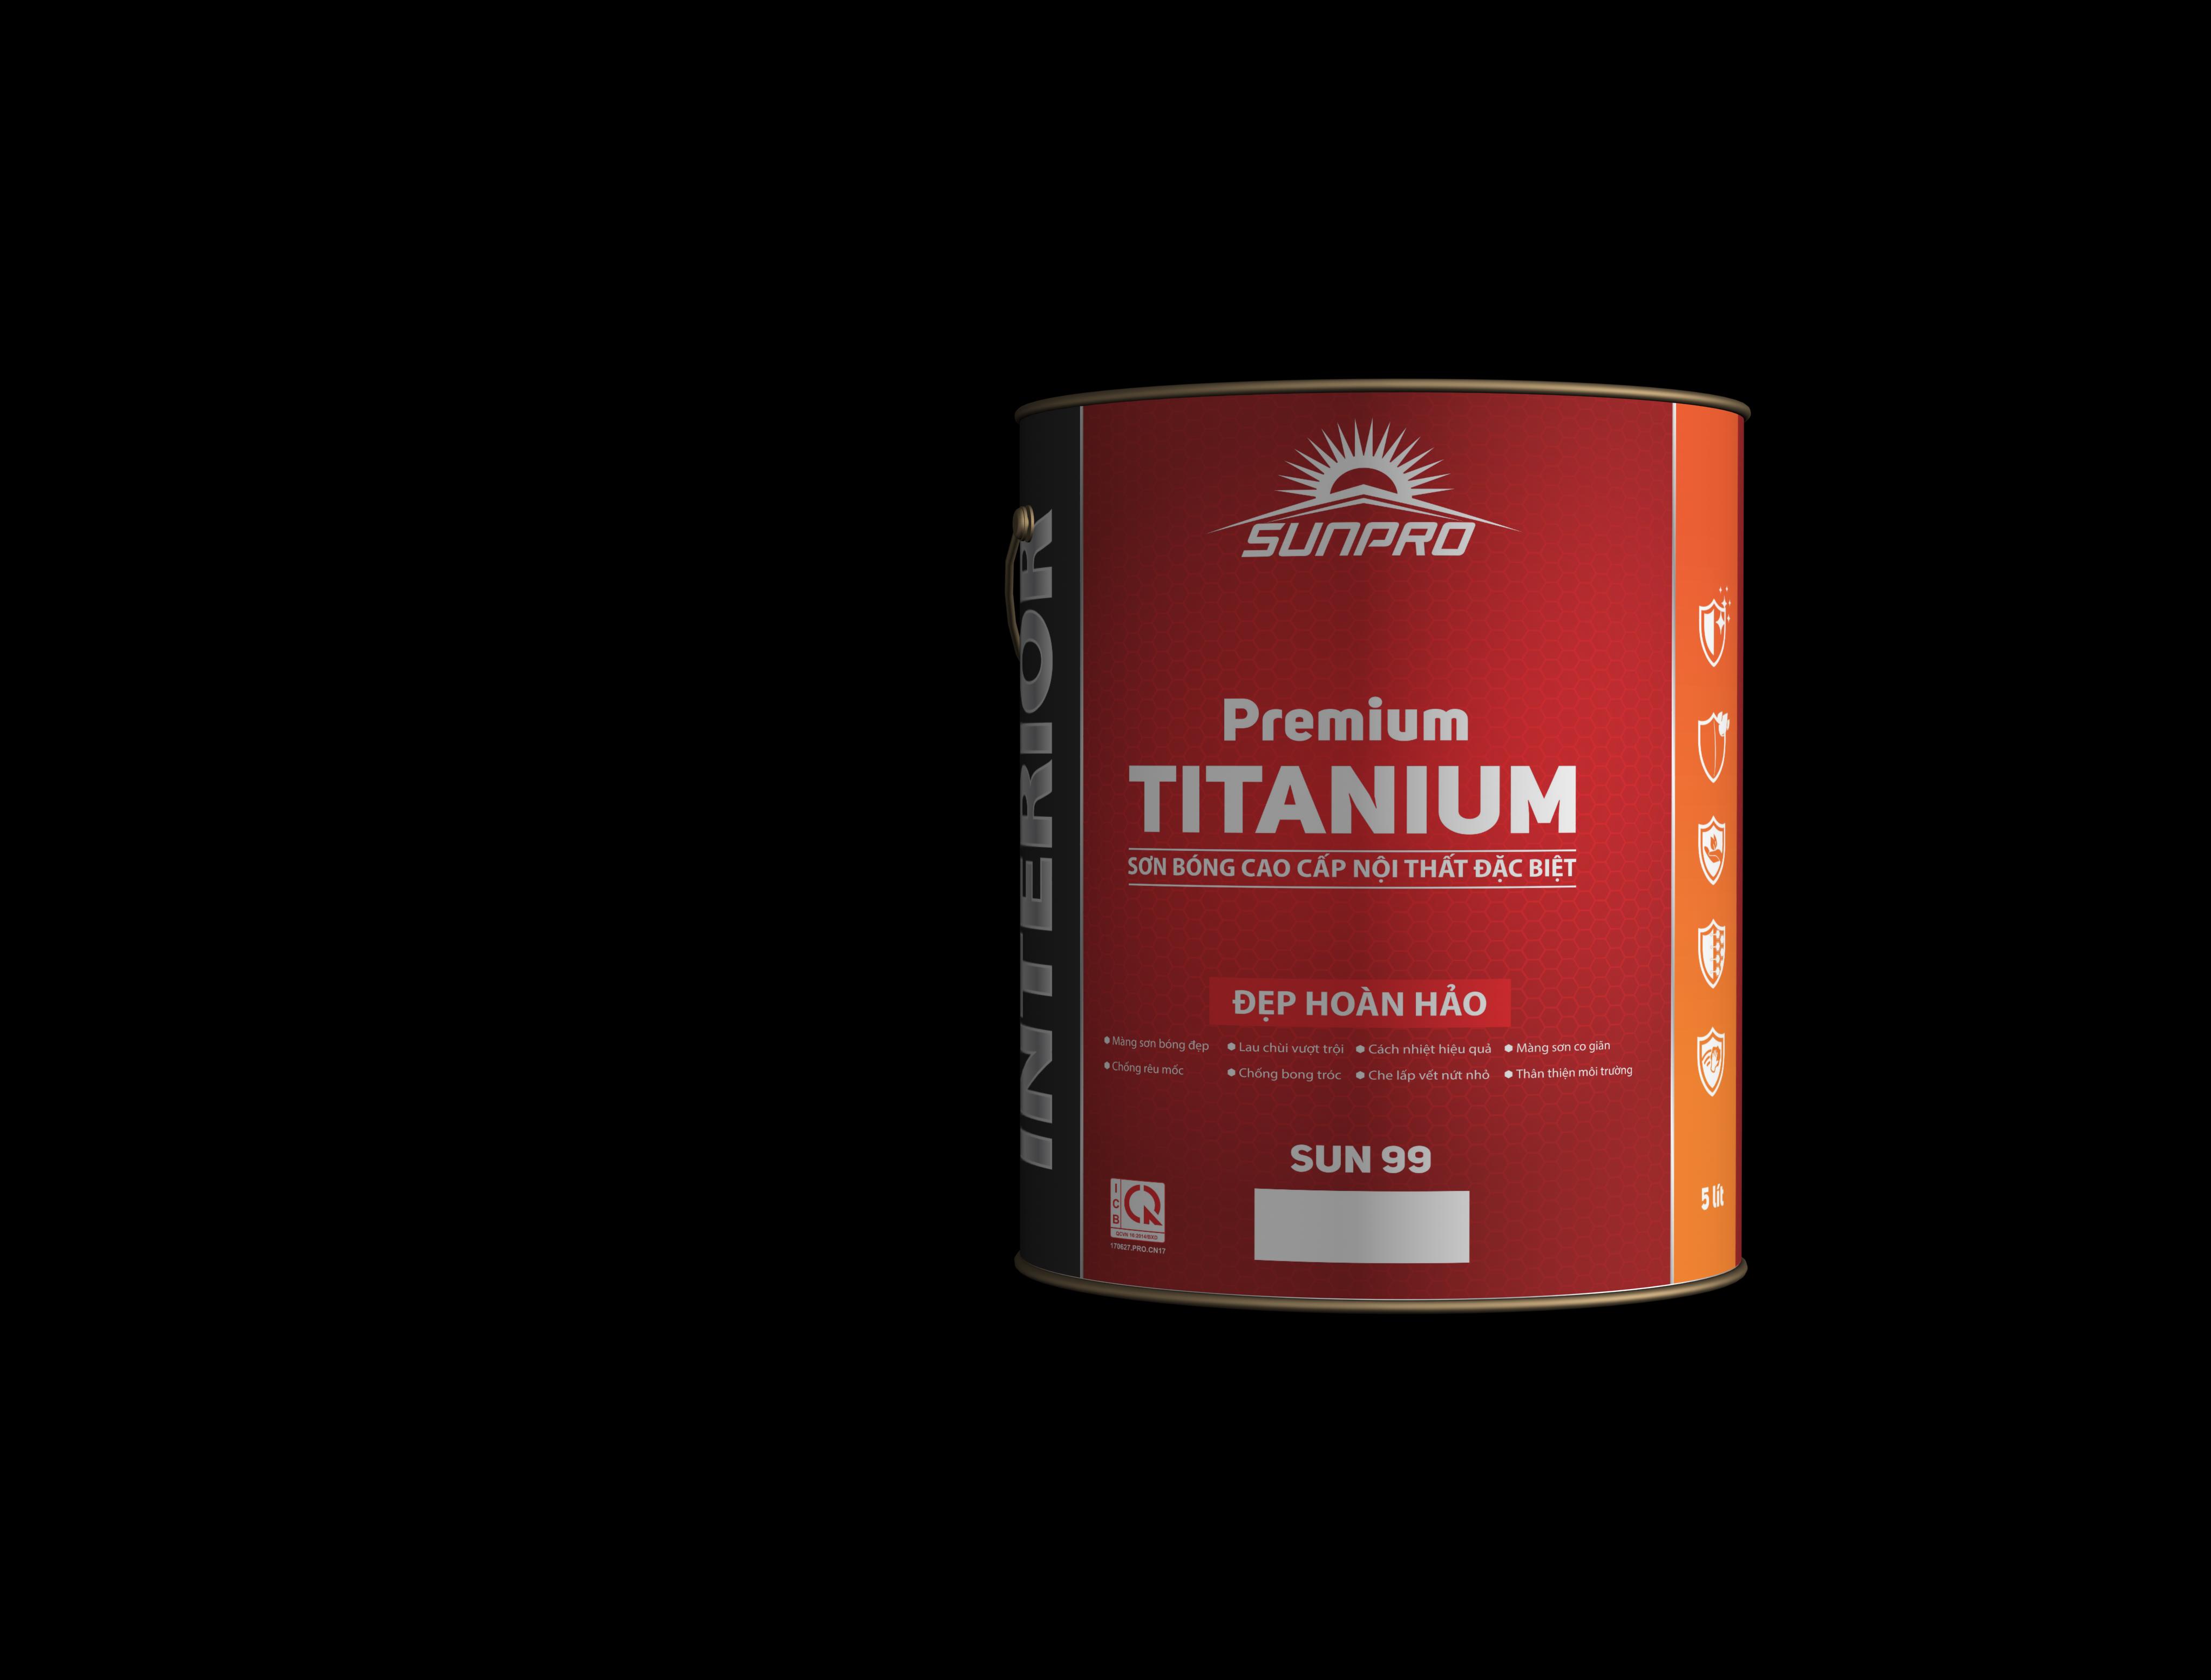 Sơn bóng cao cấp nội thất đặc biệt Premium TITANIUM